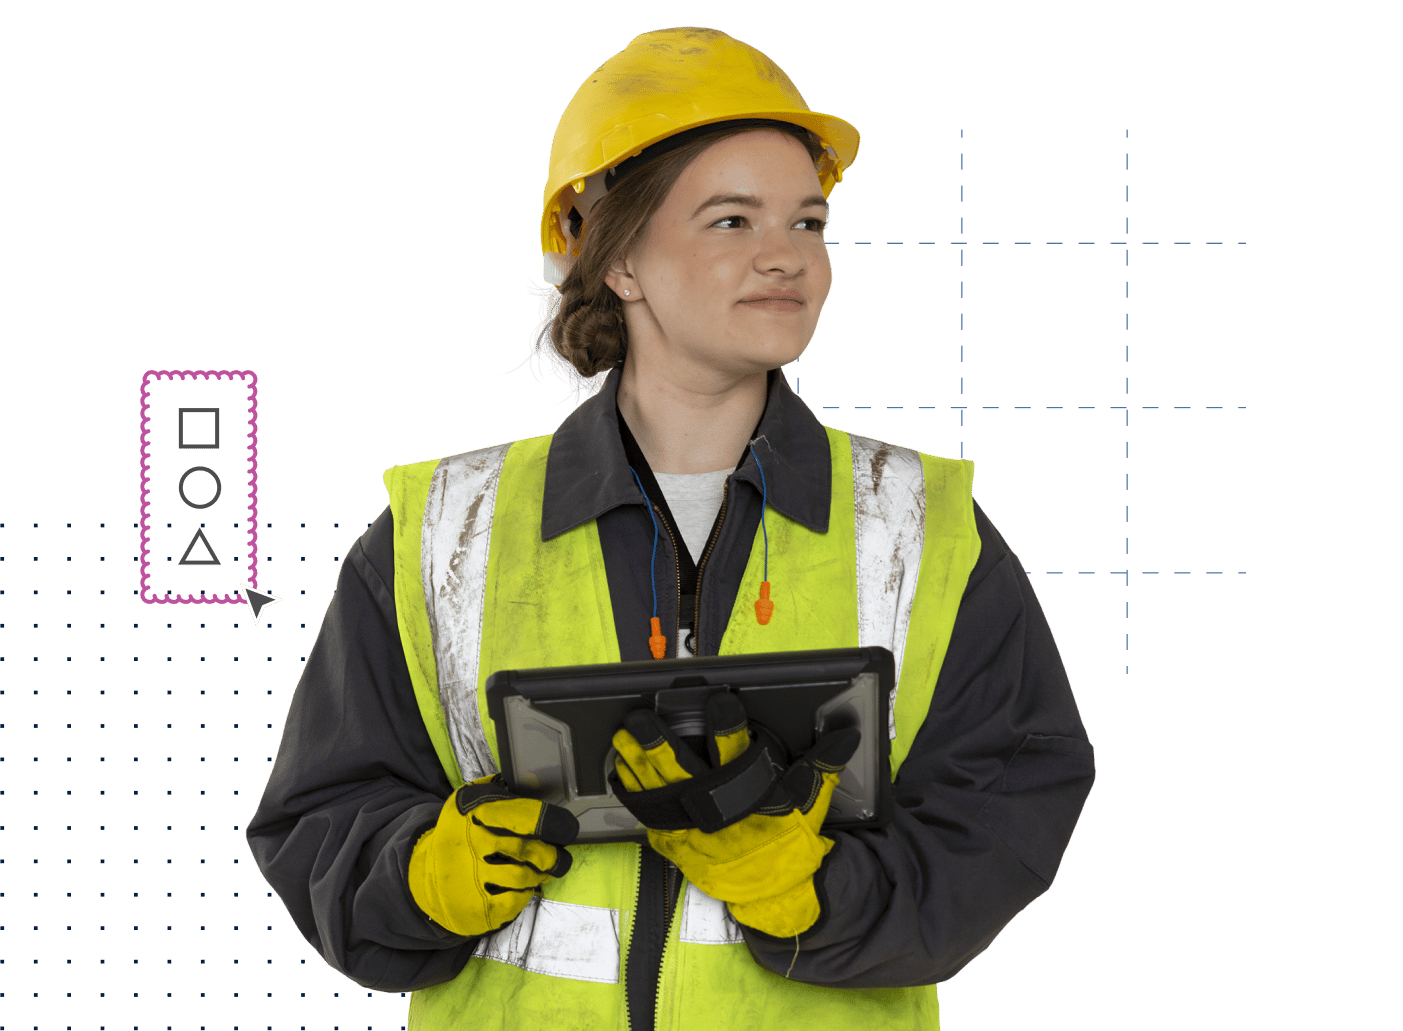 kvindelig underentreprenør, der arbejder i byggebranchen, iført vest, hjelm, handsker og med en tablet i hånden